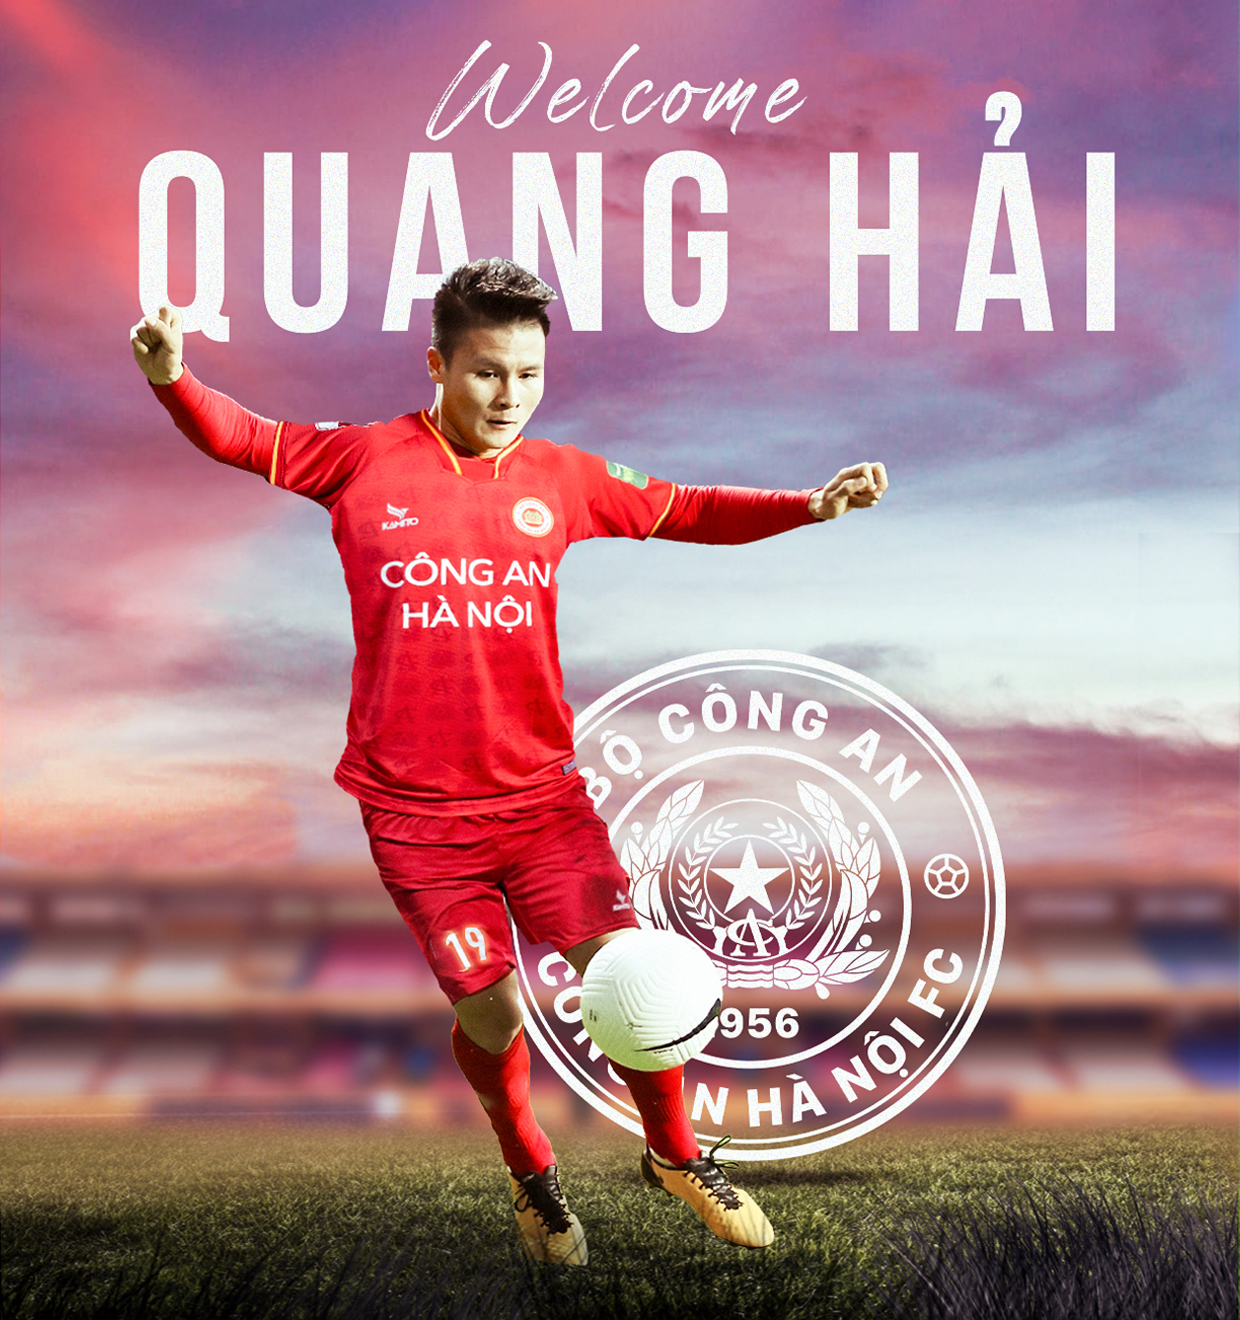 Tiền vệ Quang Hải gia nhập câu lạc bộ Công an Hà Nội. Ảnh: CAHN FC